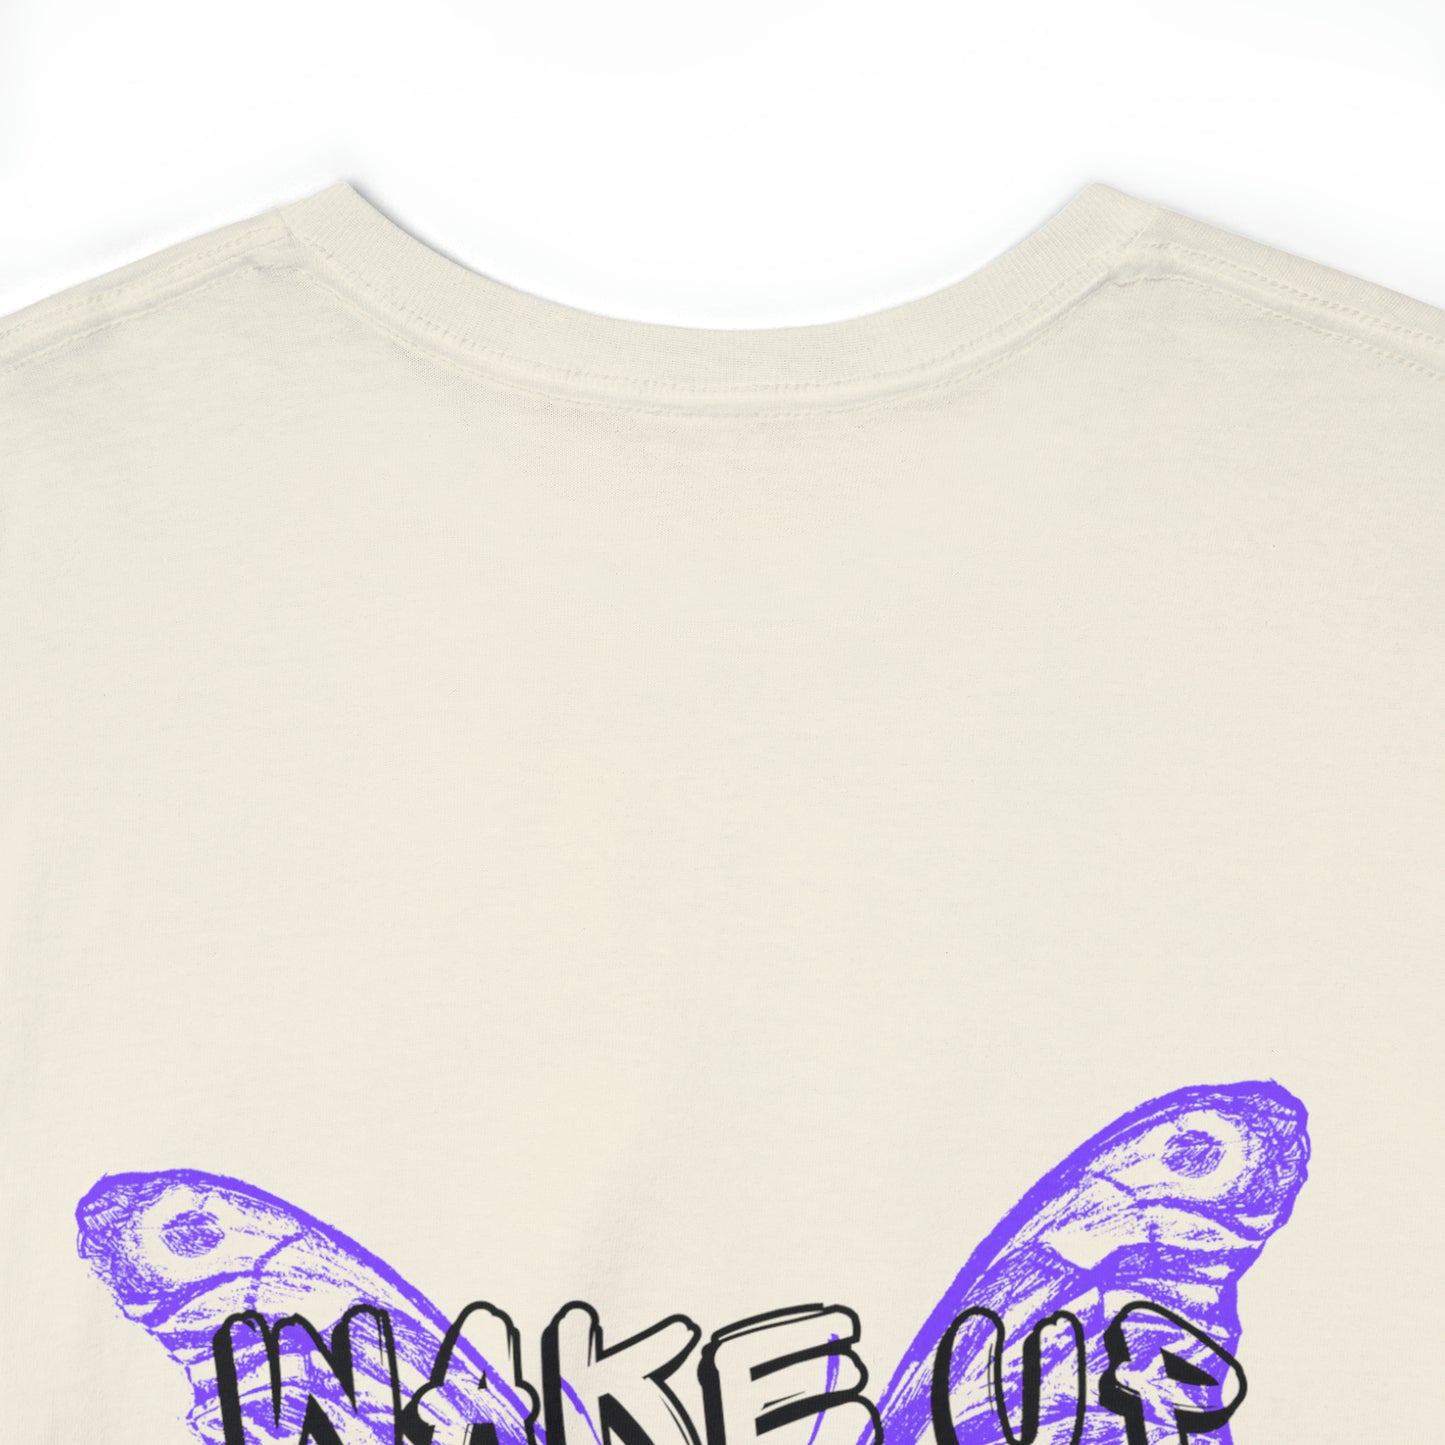 WAKE UP Butterfly Effect Tee (Graffiti Font)